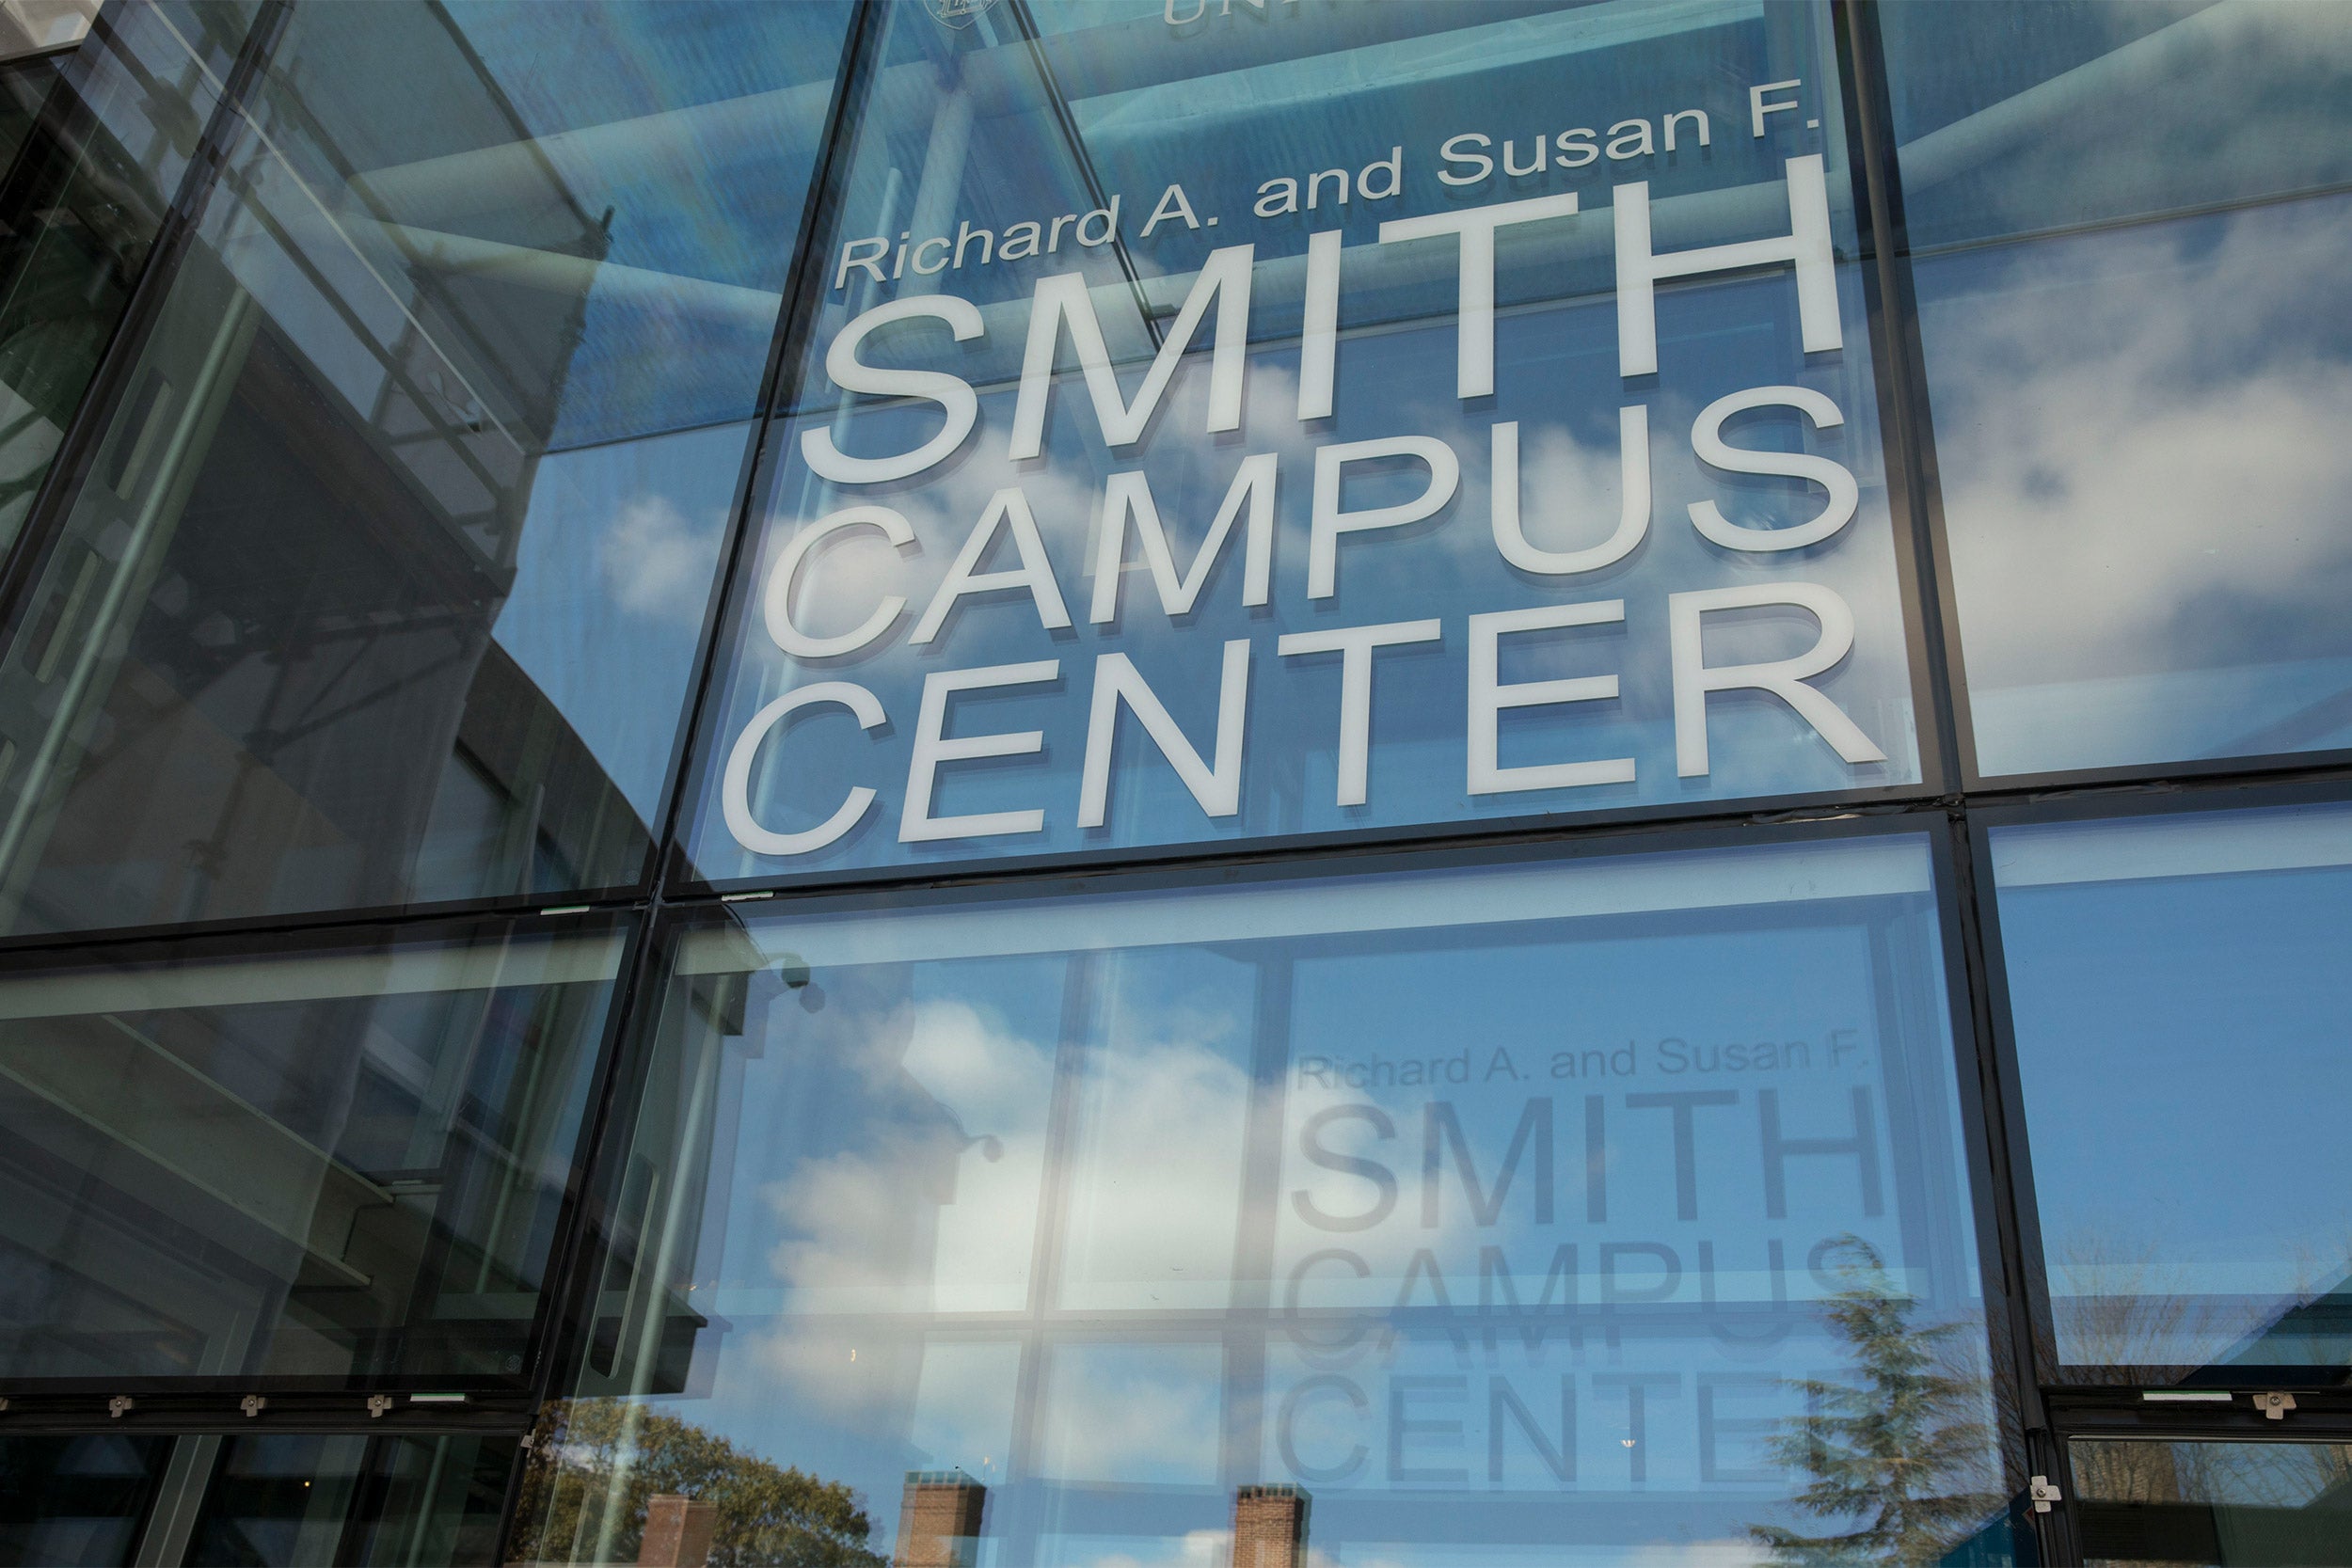 Smith Campus Center